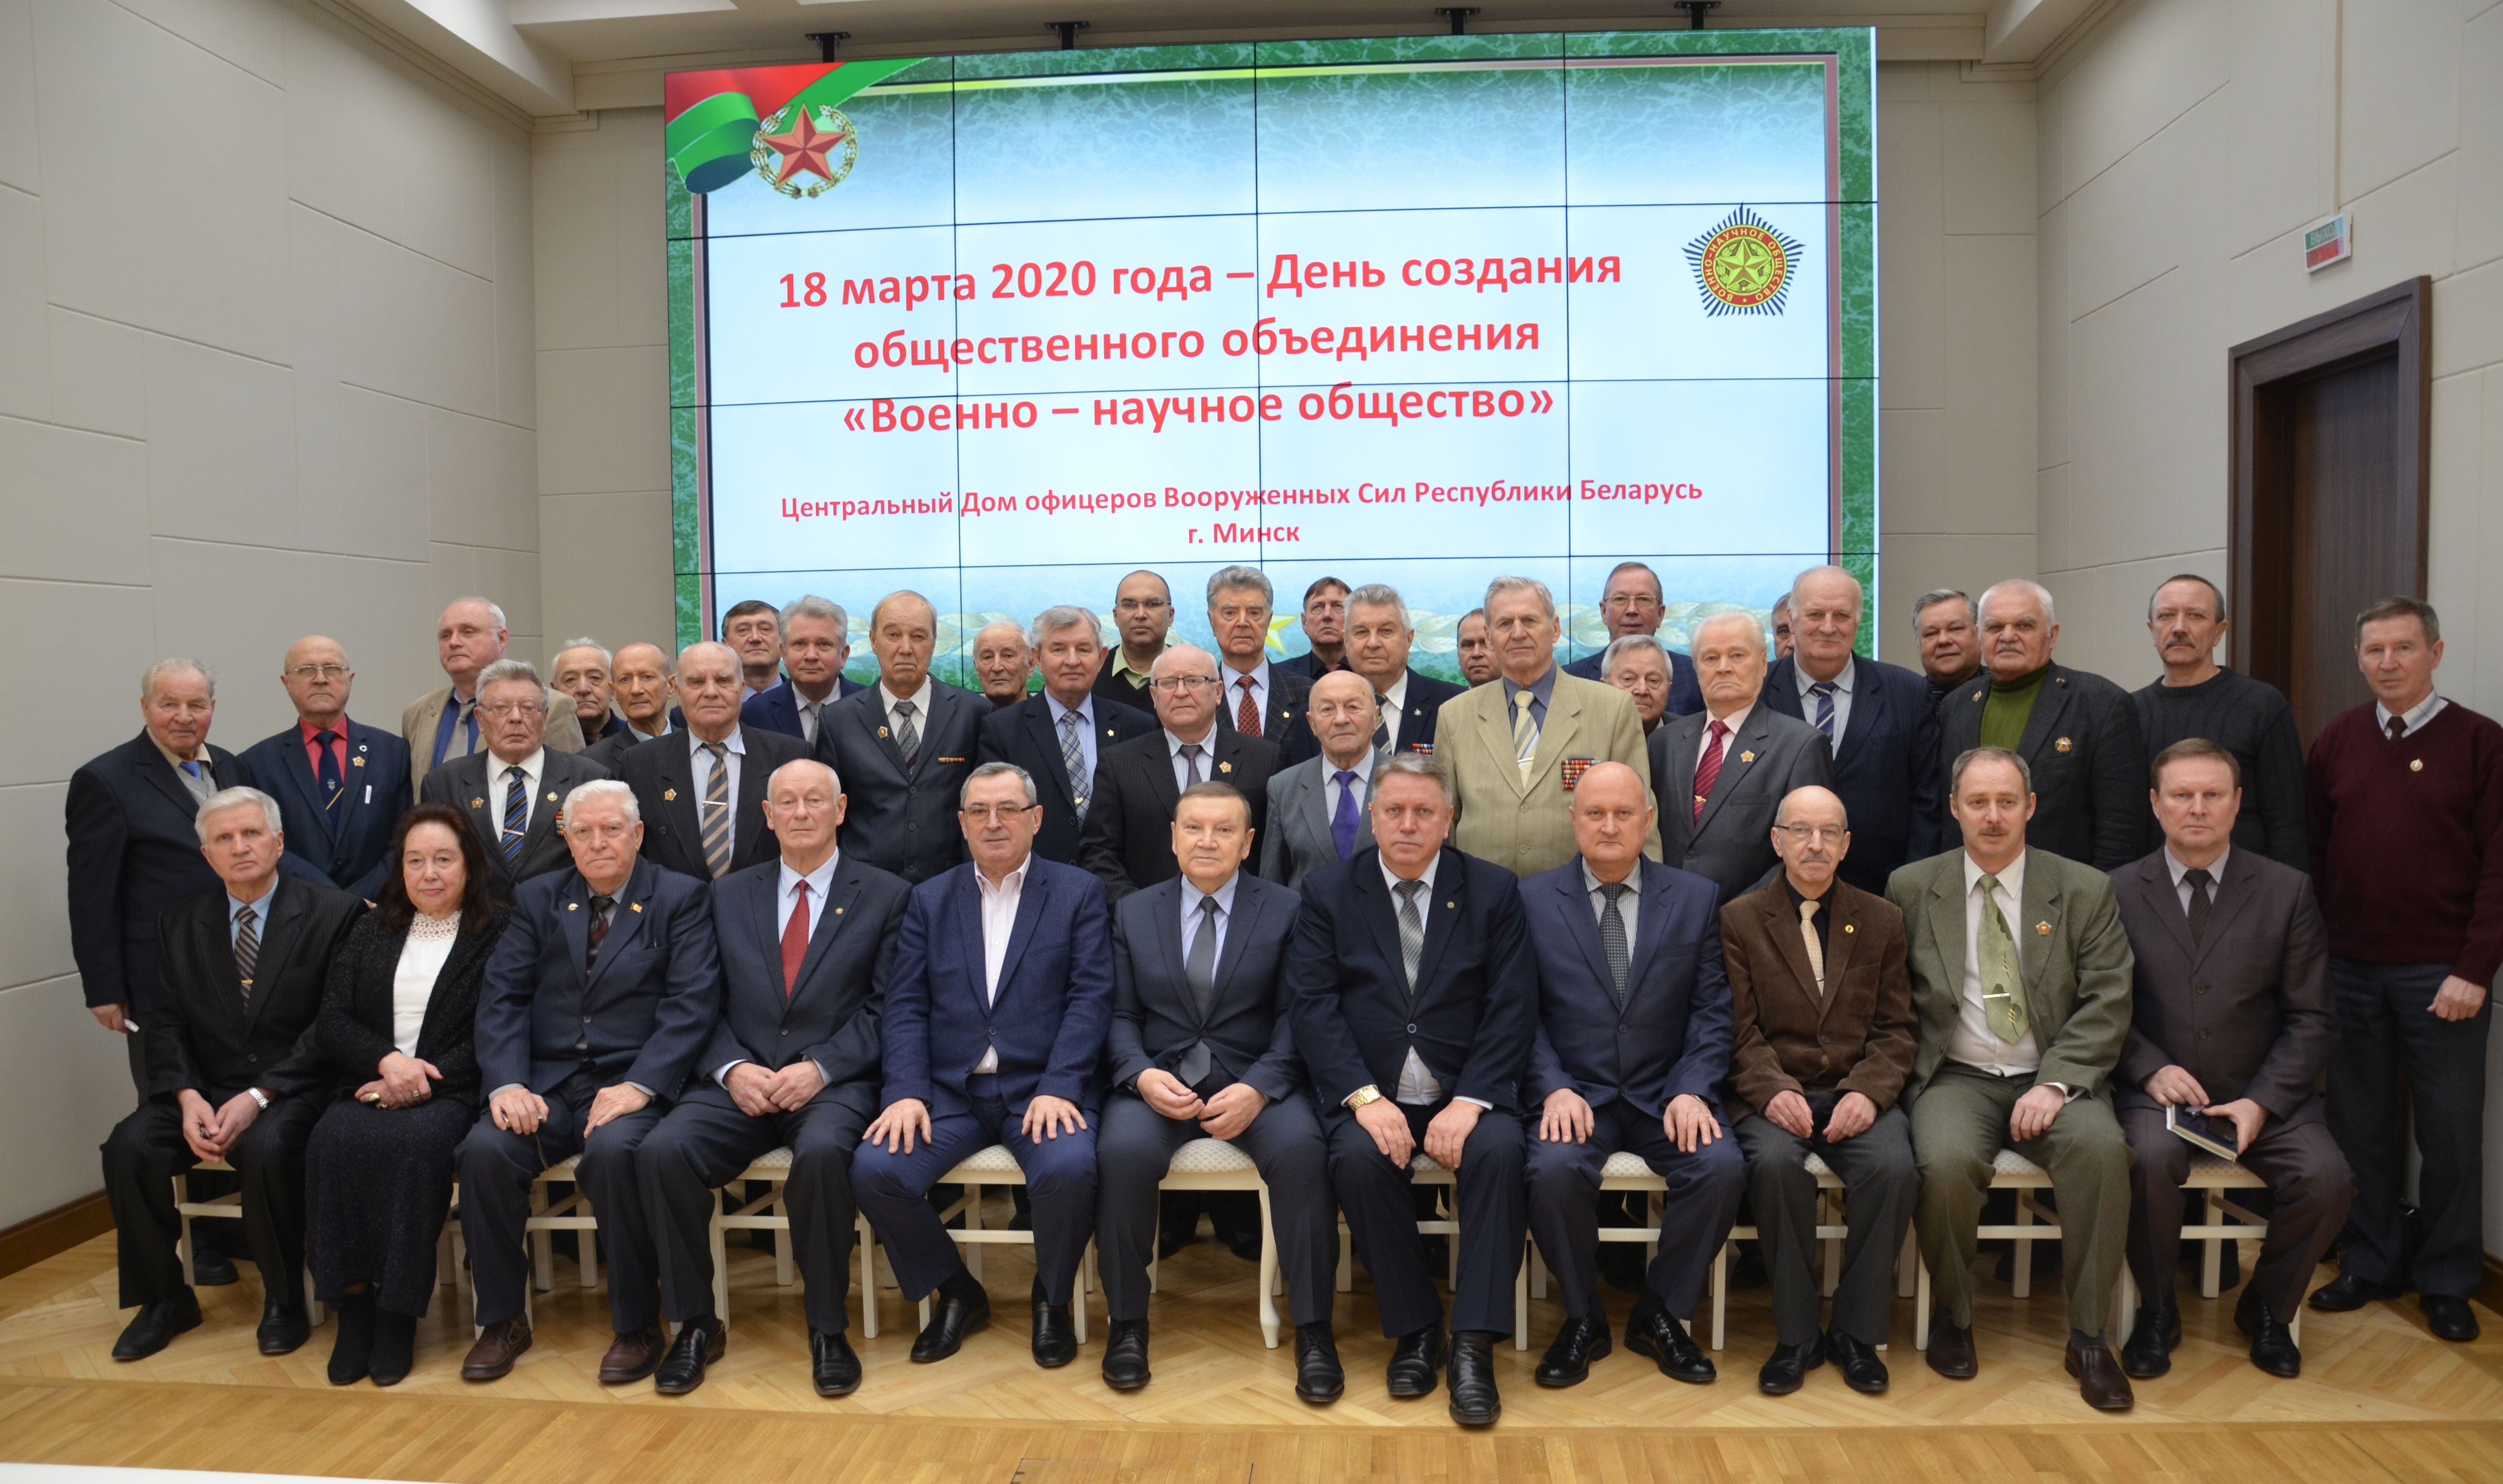 фото участников учредительного собрания военно-научного общества 18 марта 2020 года Минск. Центральный дом офицеров